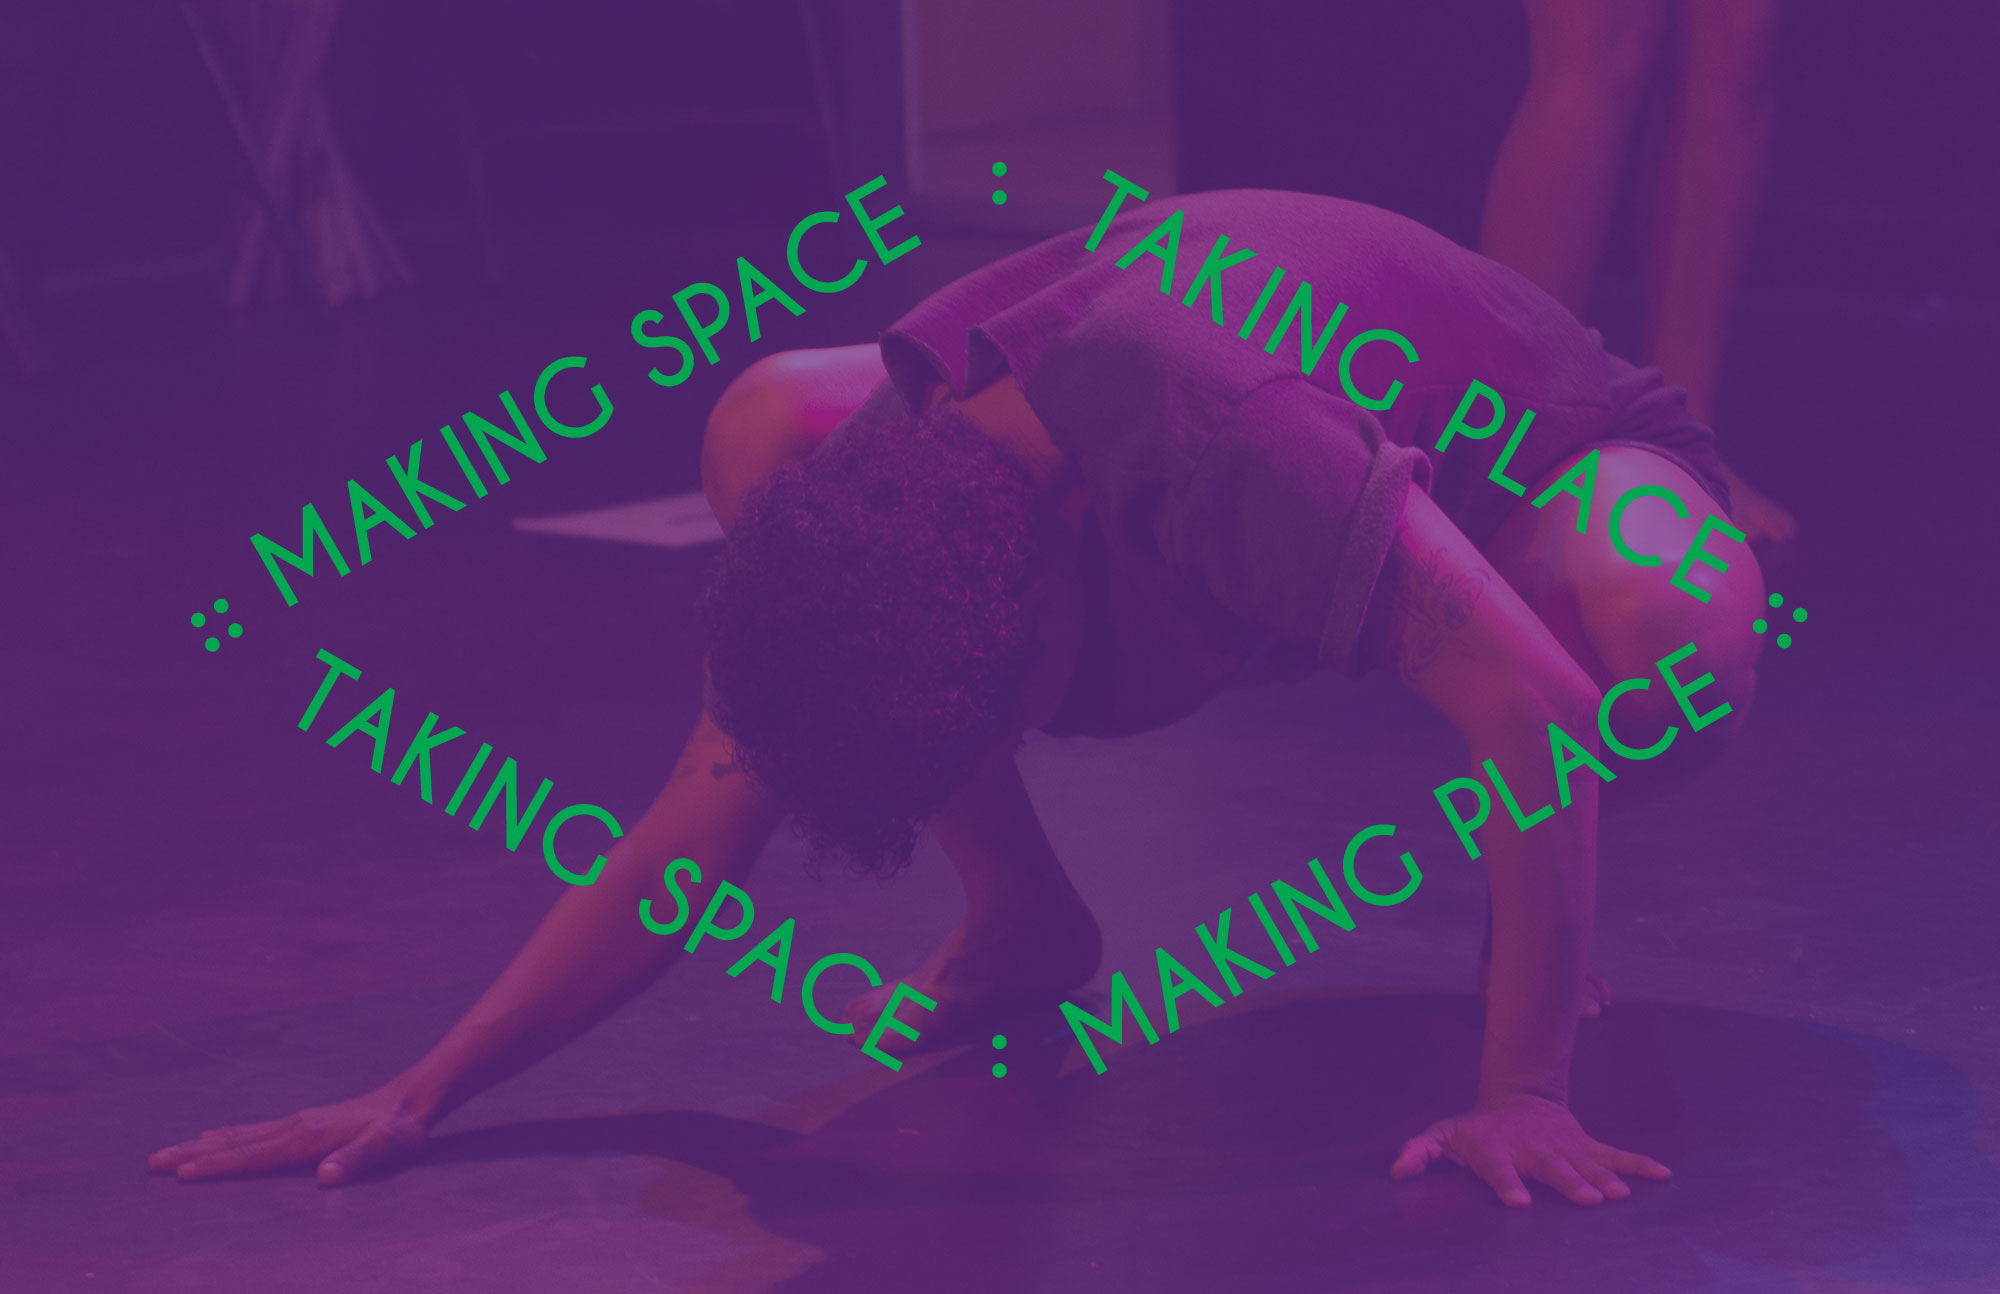 Making Space : Taking Place :: Taking Space : Making Place